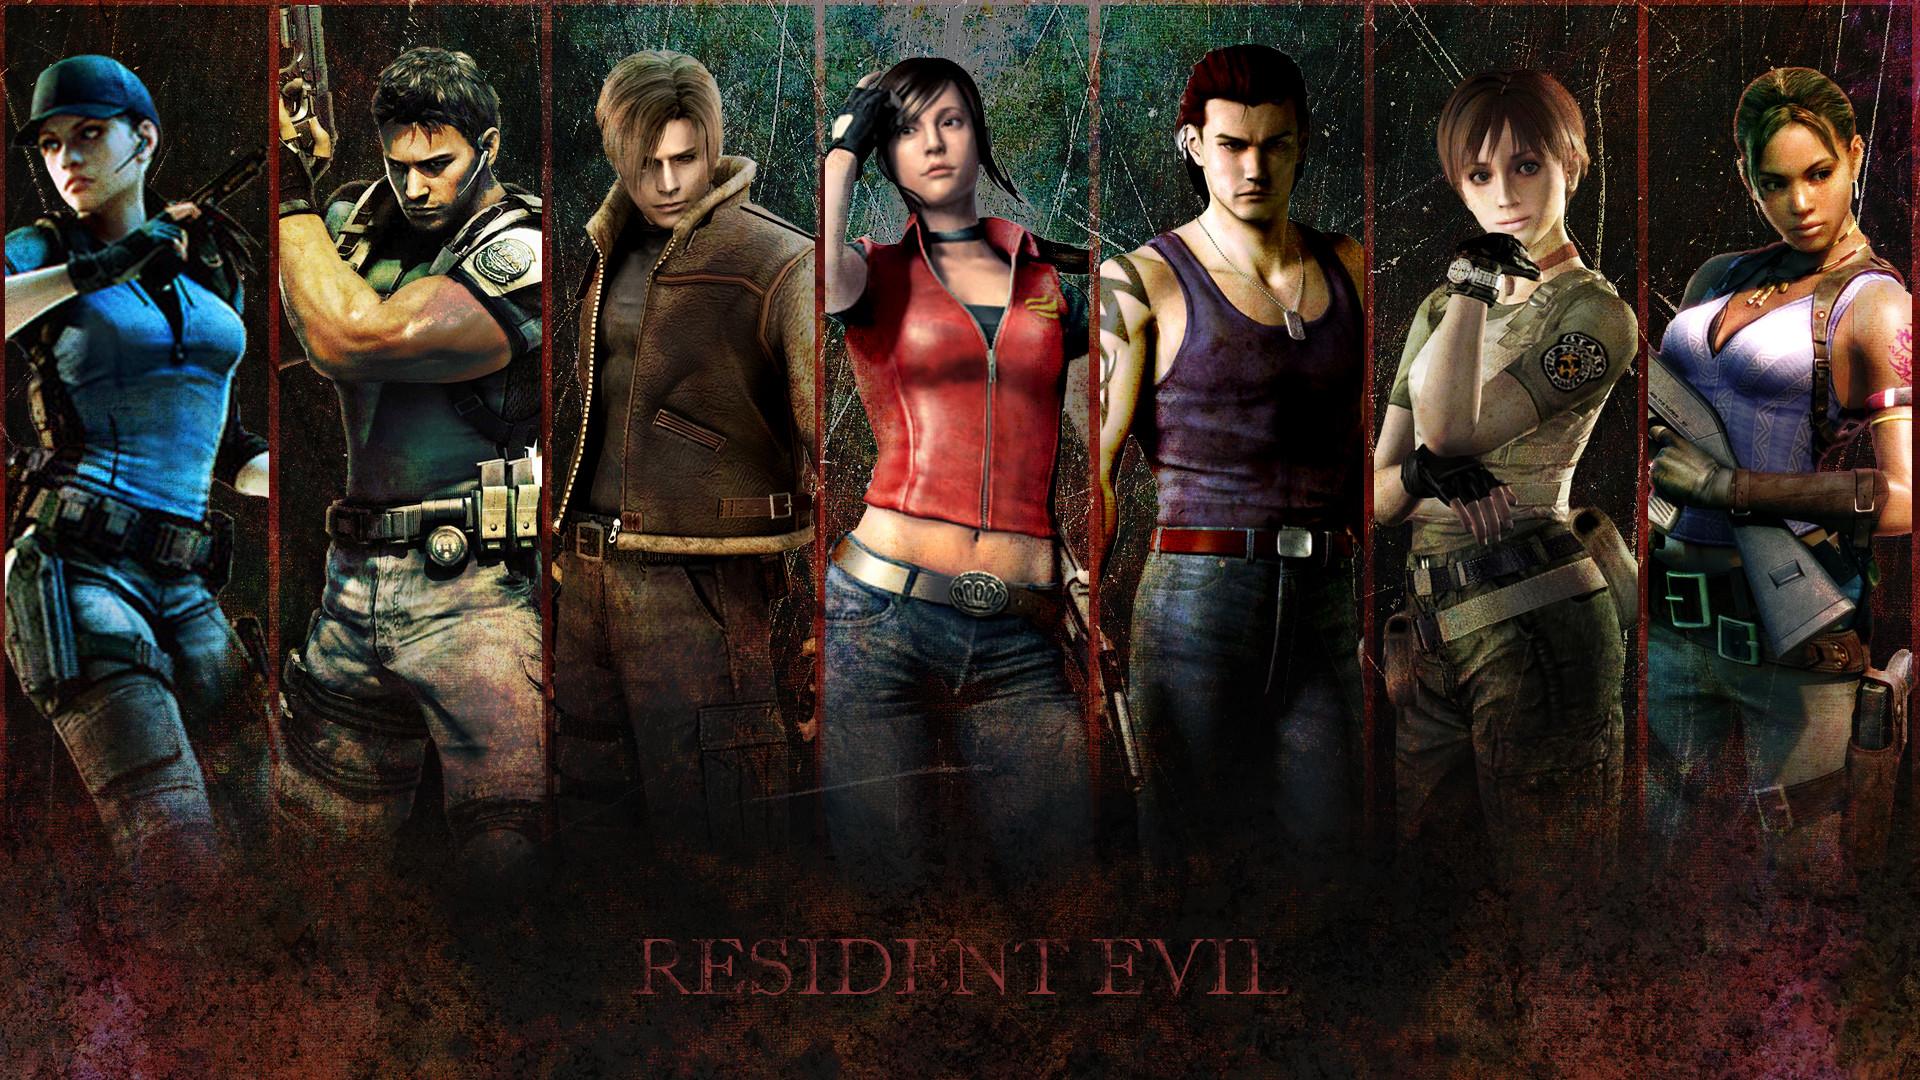 Resident Evil 4 Wallpaper (the best image in 2018)